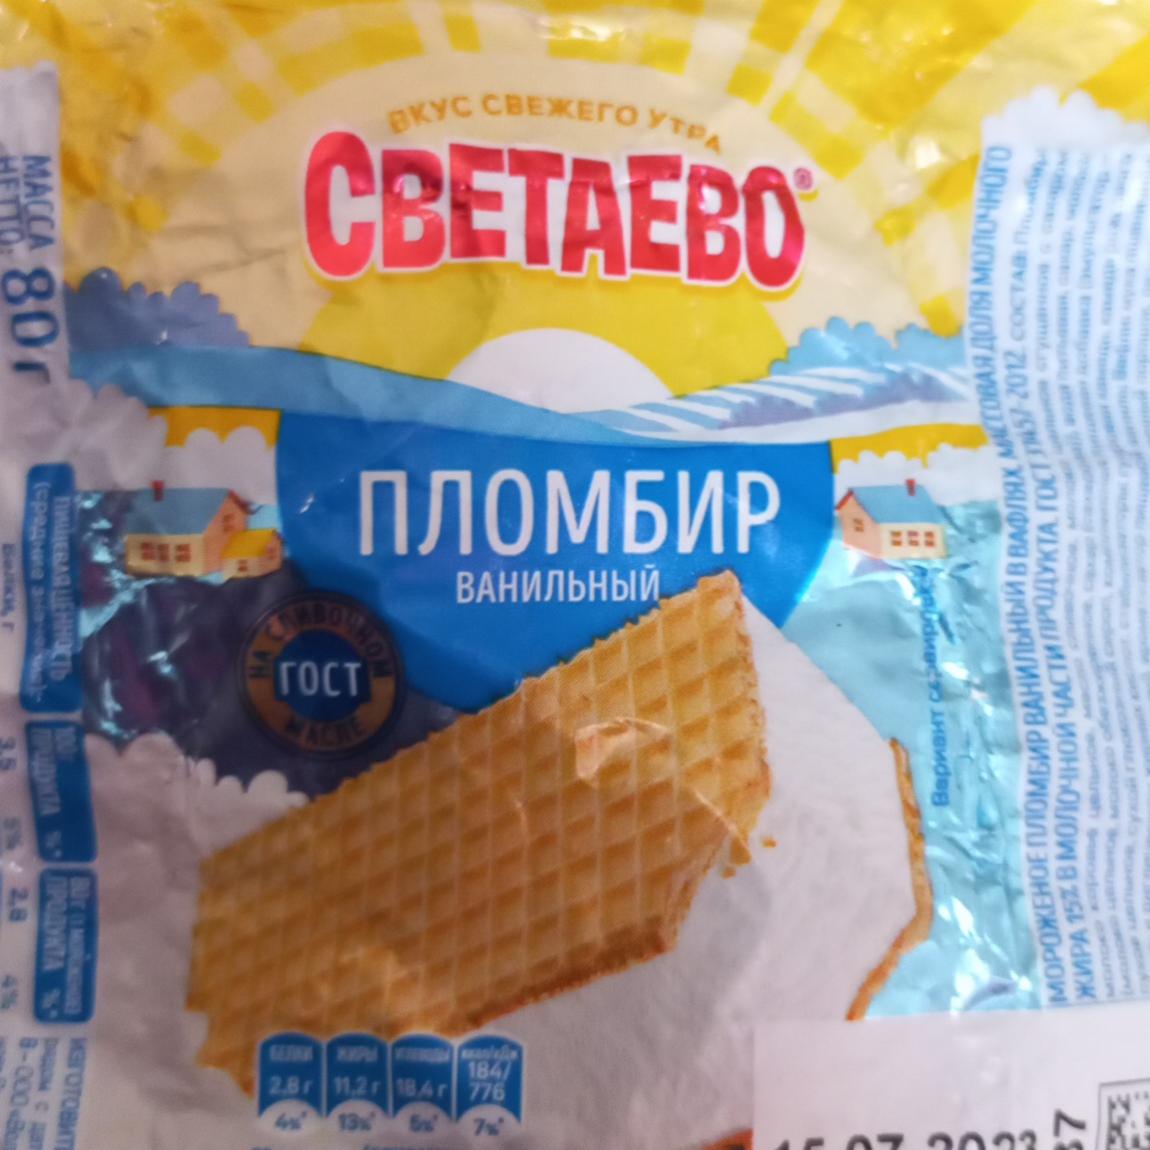 Фото - Мороженое пломбир ванильный в вафлях Светаево